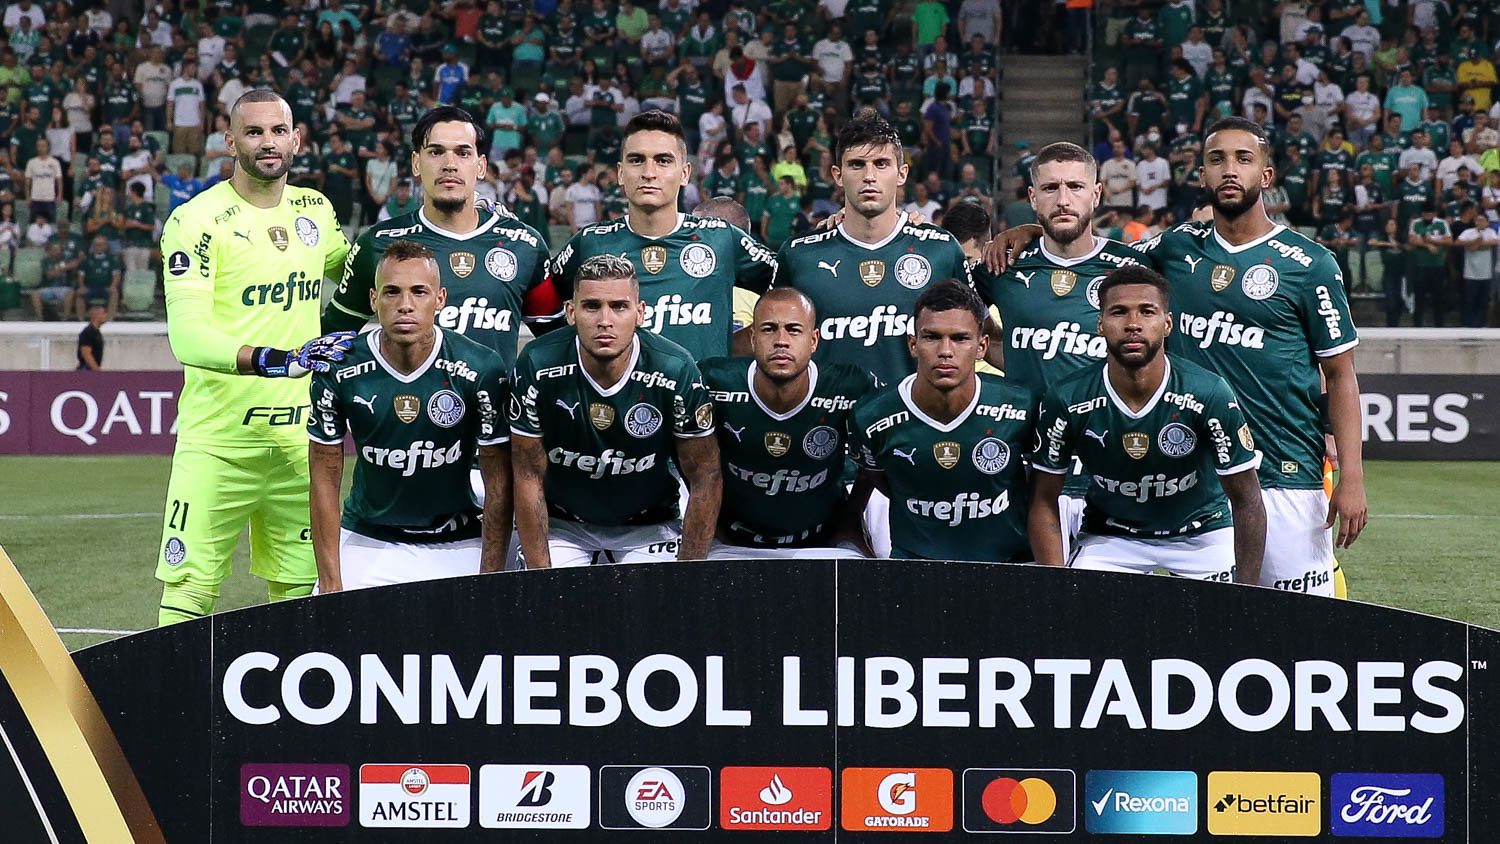 FIFA impõe camisa diferente ao Palmeiras no Mundial de Clubes. Entenda!